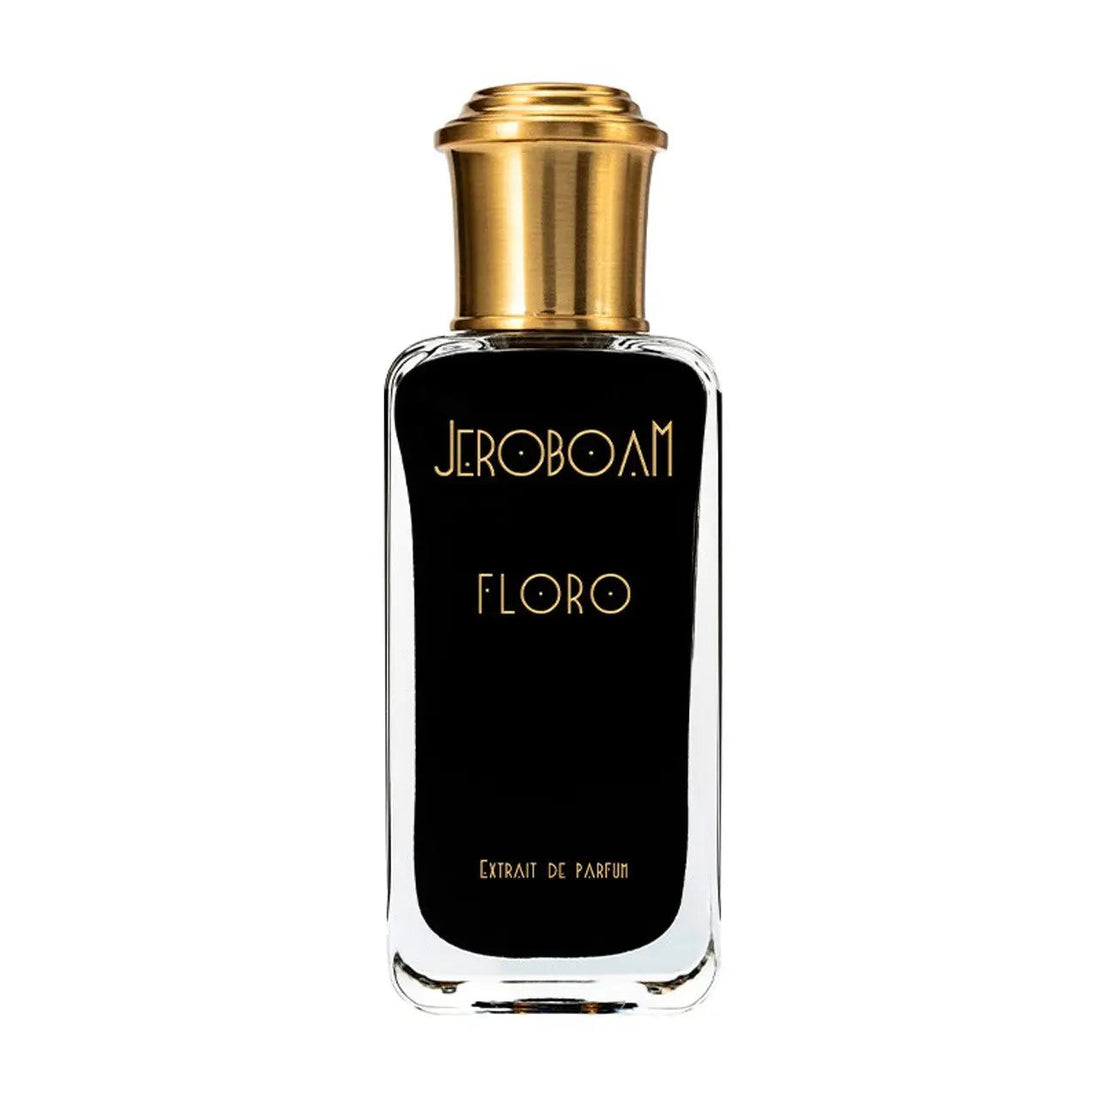 Extracto de perfume Jeroboam Floro - 30 ml